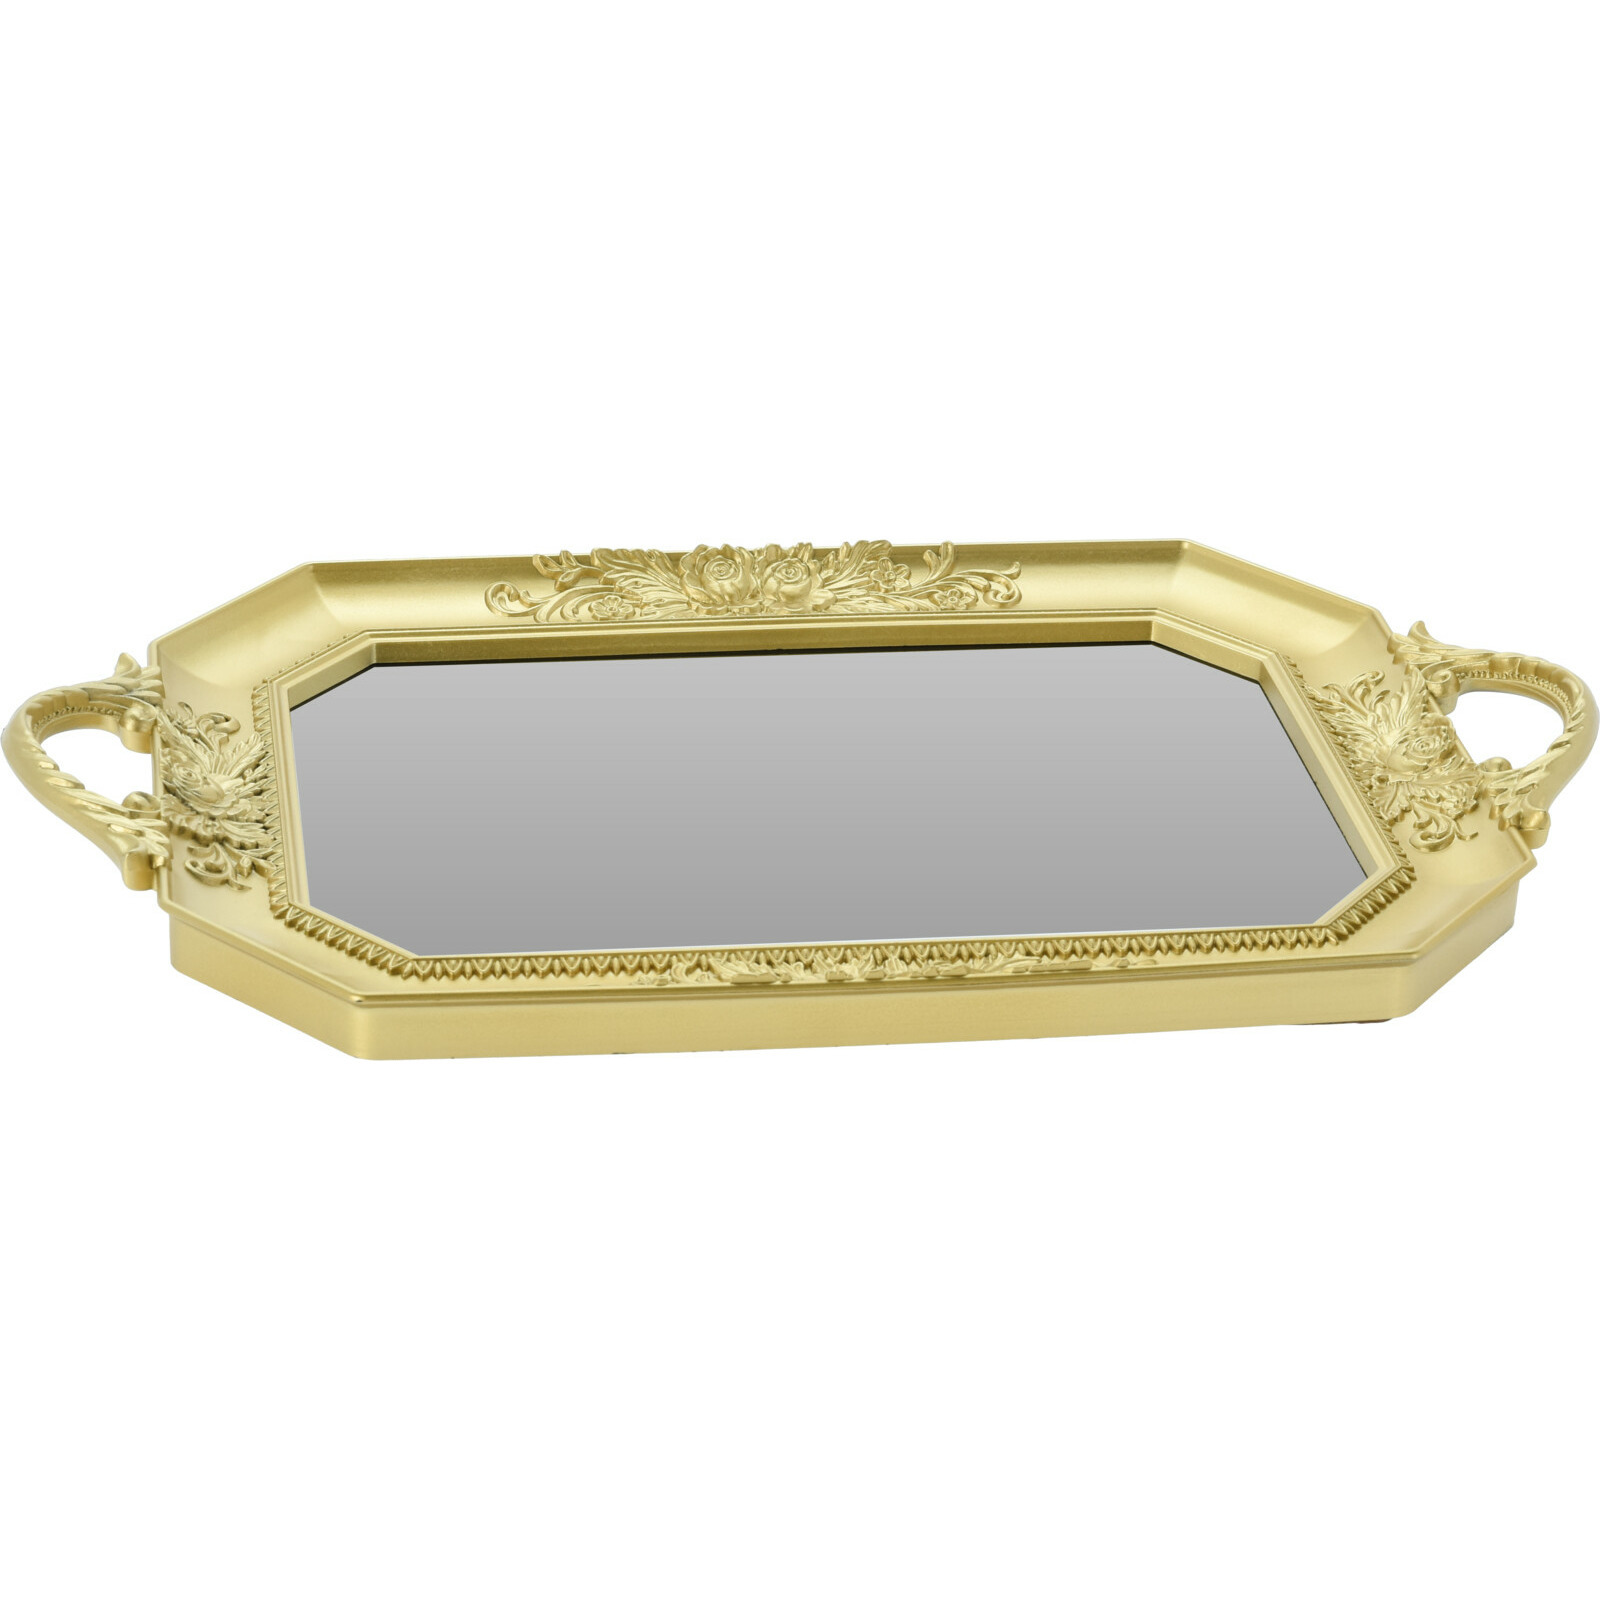 Excellent Houseware Dienblad / kaarsplateau - ovaal goud met spiegelbodem - kunststof - x 35 cm -